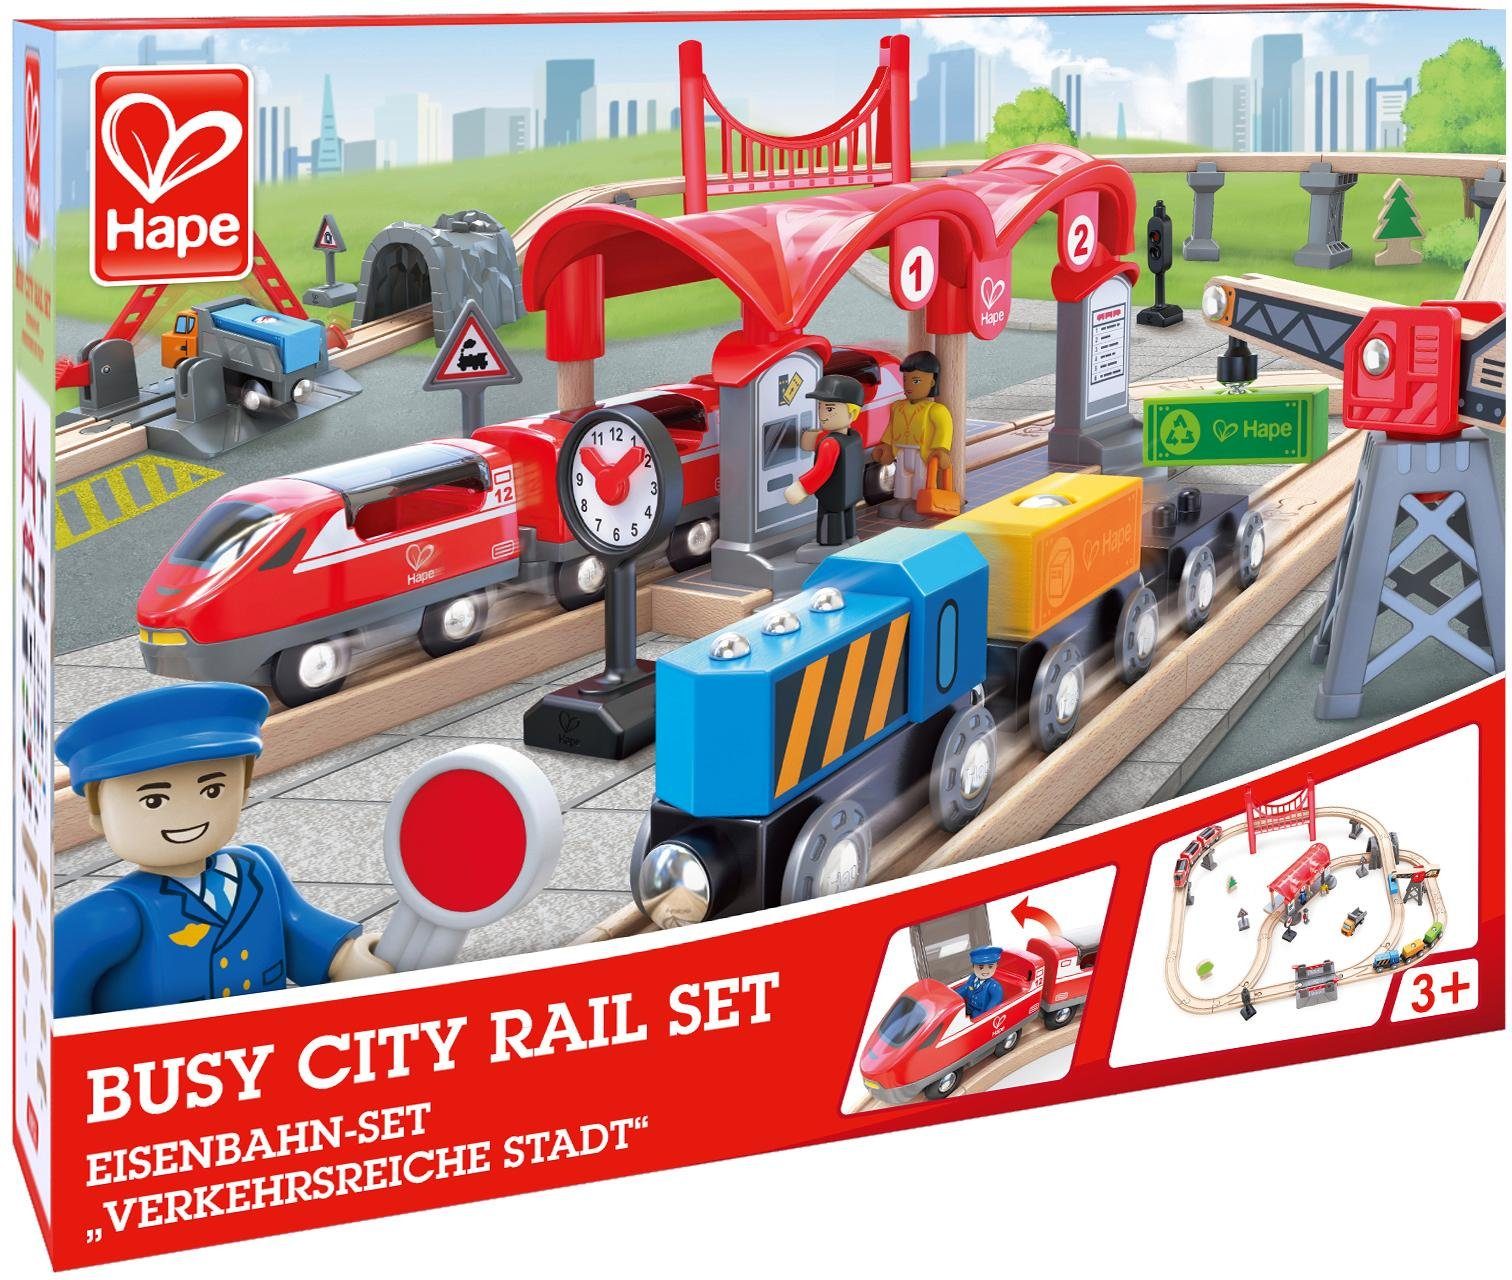 Hape Spielzeugeisenbahn-Gebäude Eisenbahn-Set - Verkehrsreiche Stadt